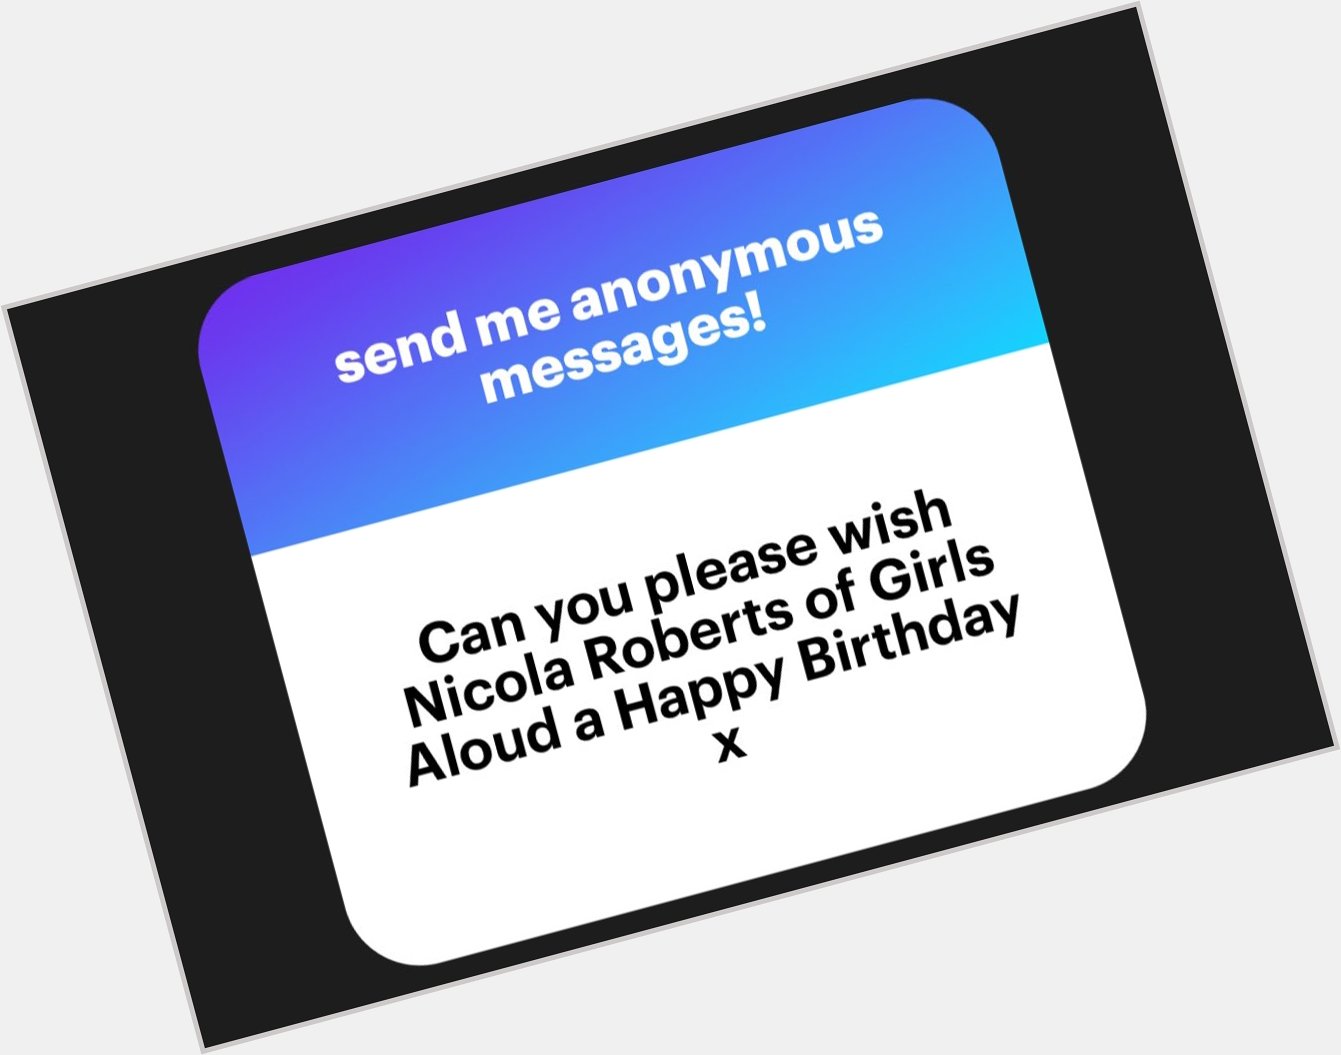 Happy birthday Nicola Roberts of Girls Aloud 